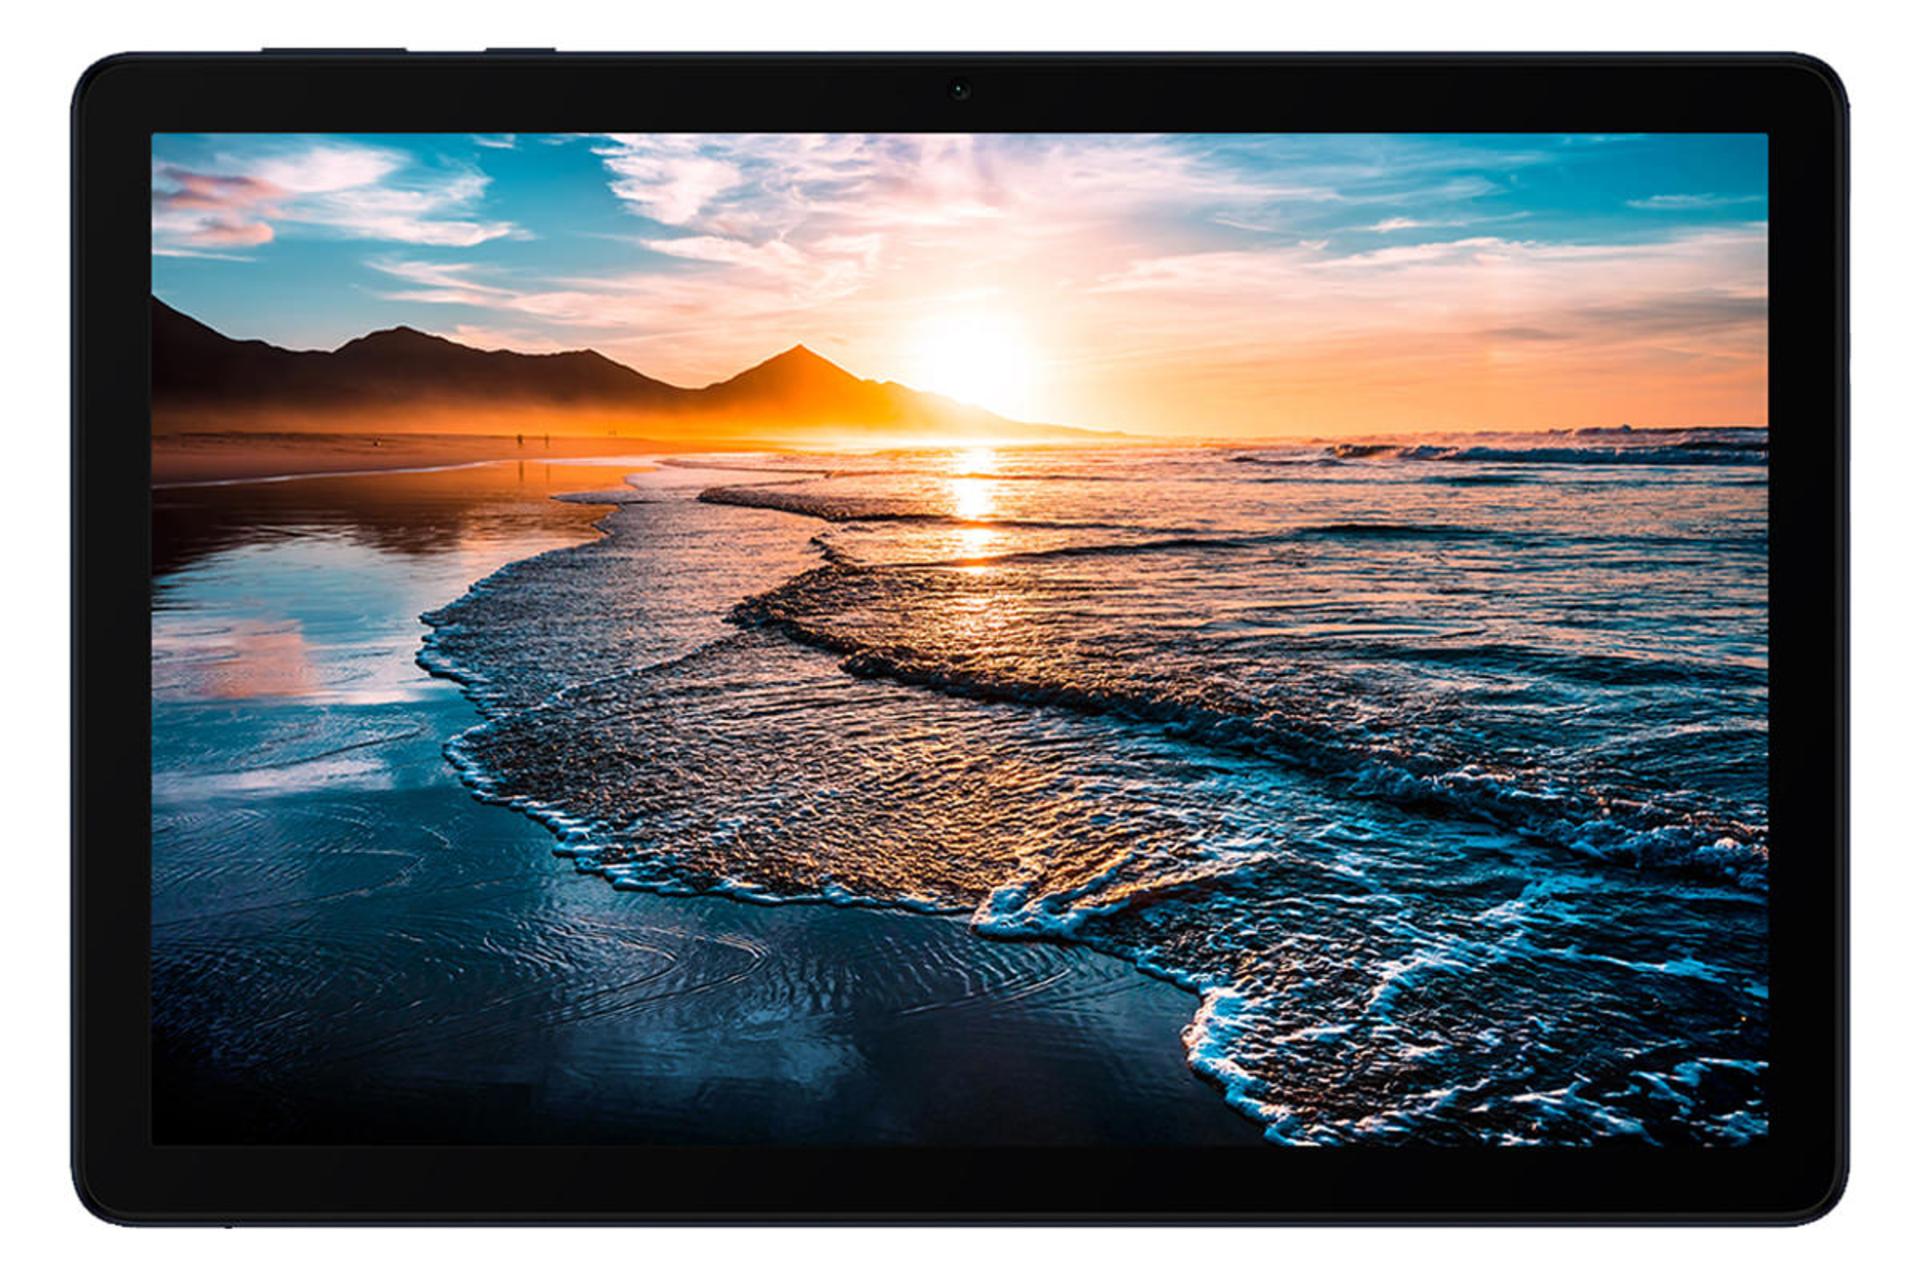 مرجع متخصصين ايران تبلت ميت پد 10.8 هواوي نماي جلو - صفحه نمايش / Huawei MatePad 10.8